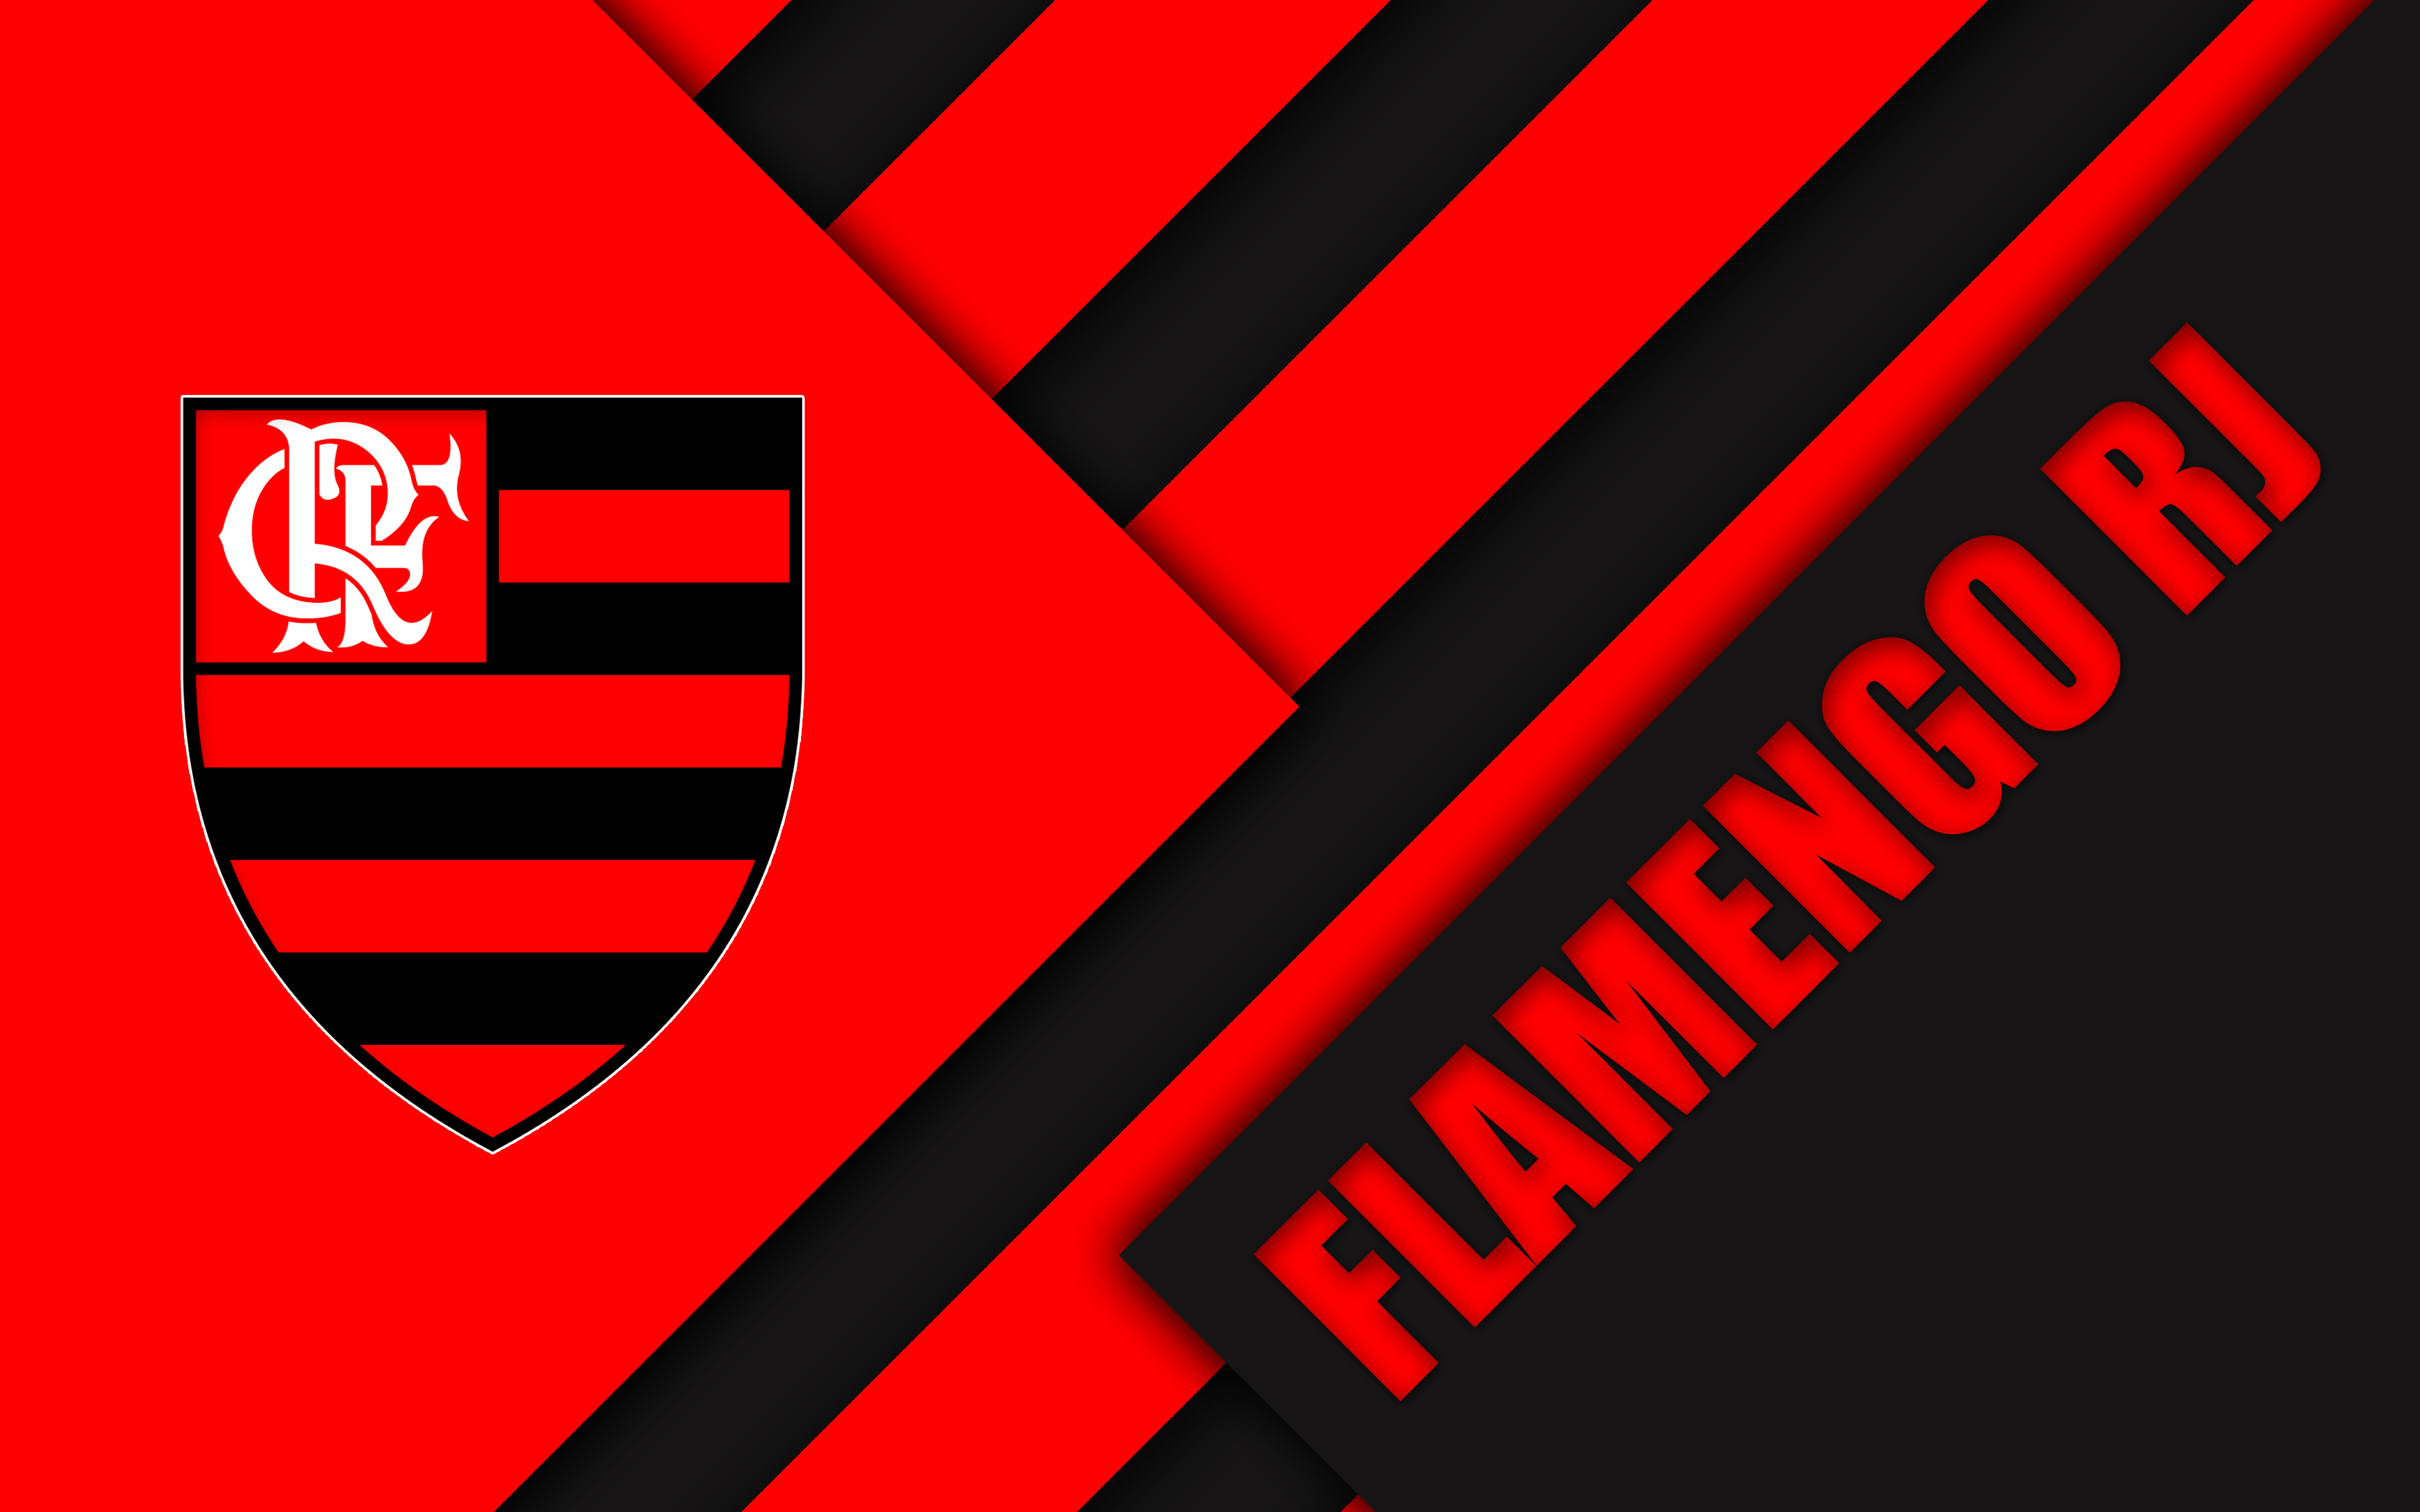 clube de regatas do flamengo, sports, logo, soccer